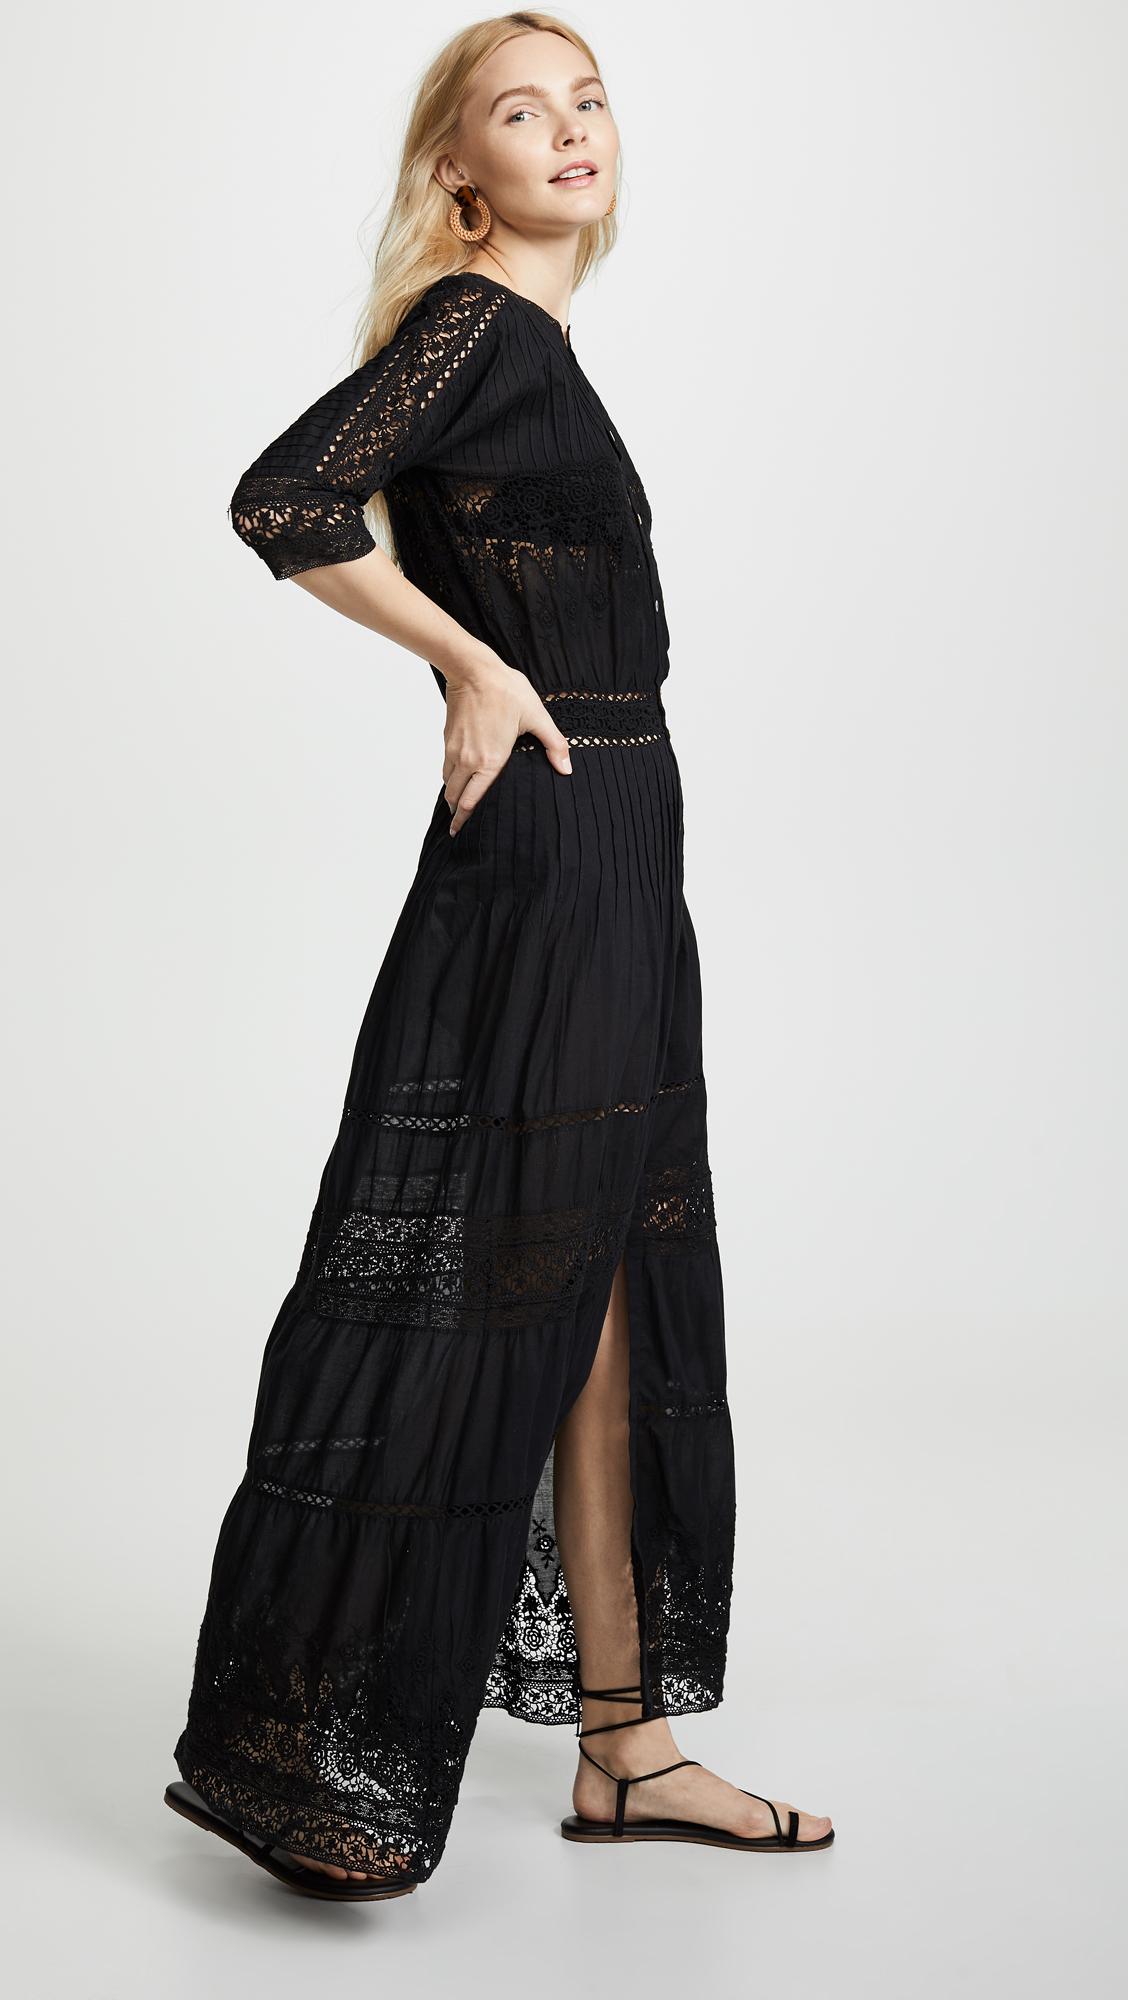 LoveShackFancy Lace Beth Dress in Black - Save 19% - Lyst